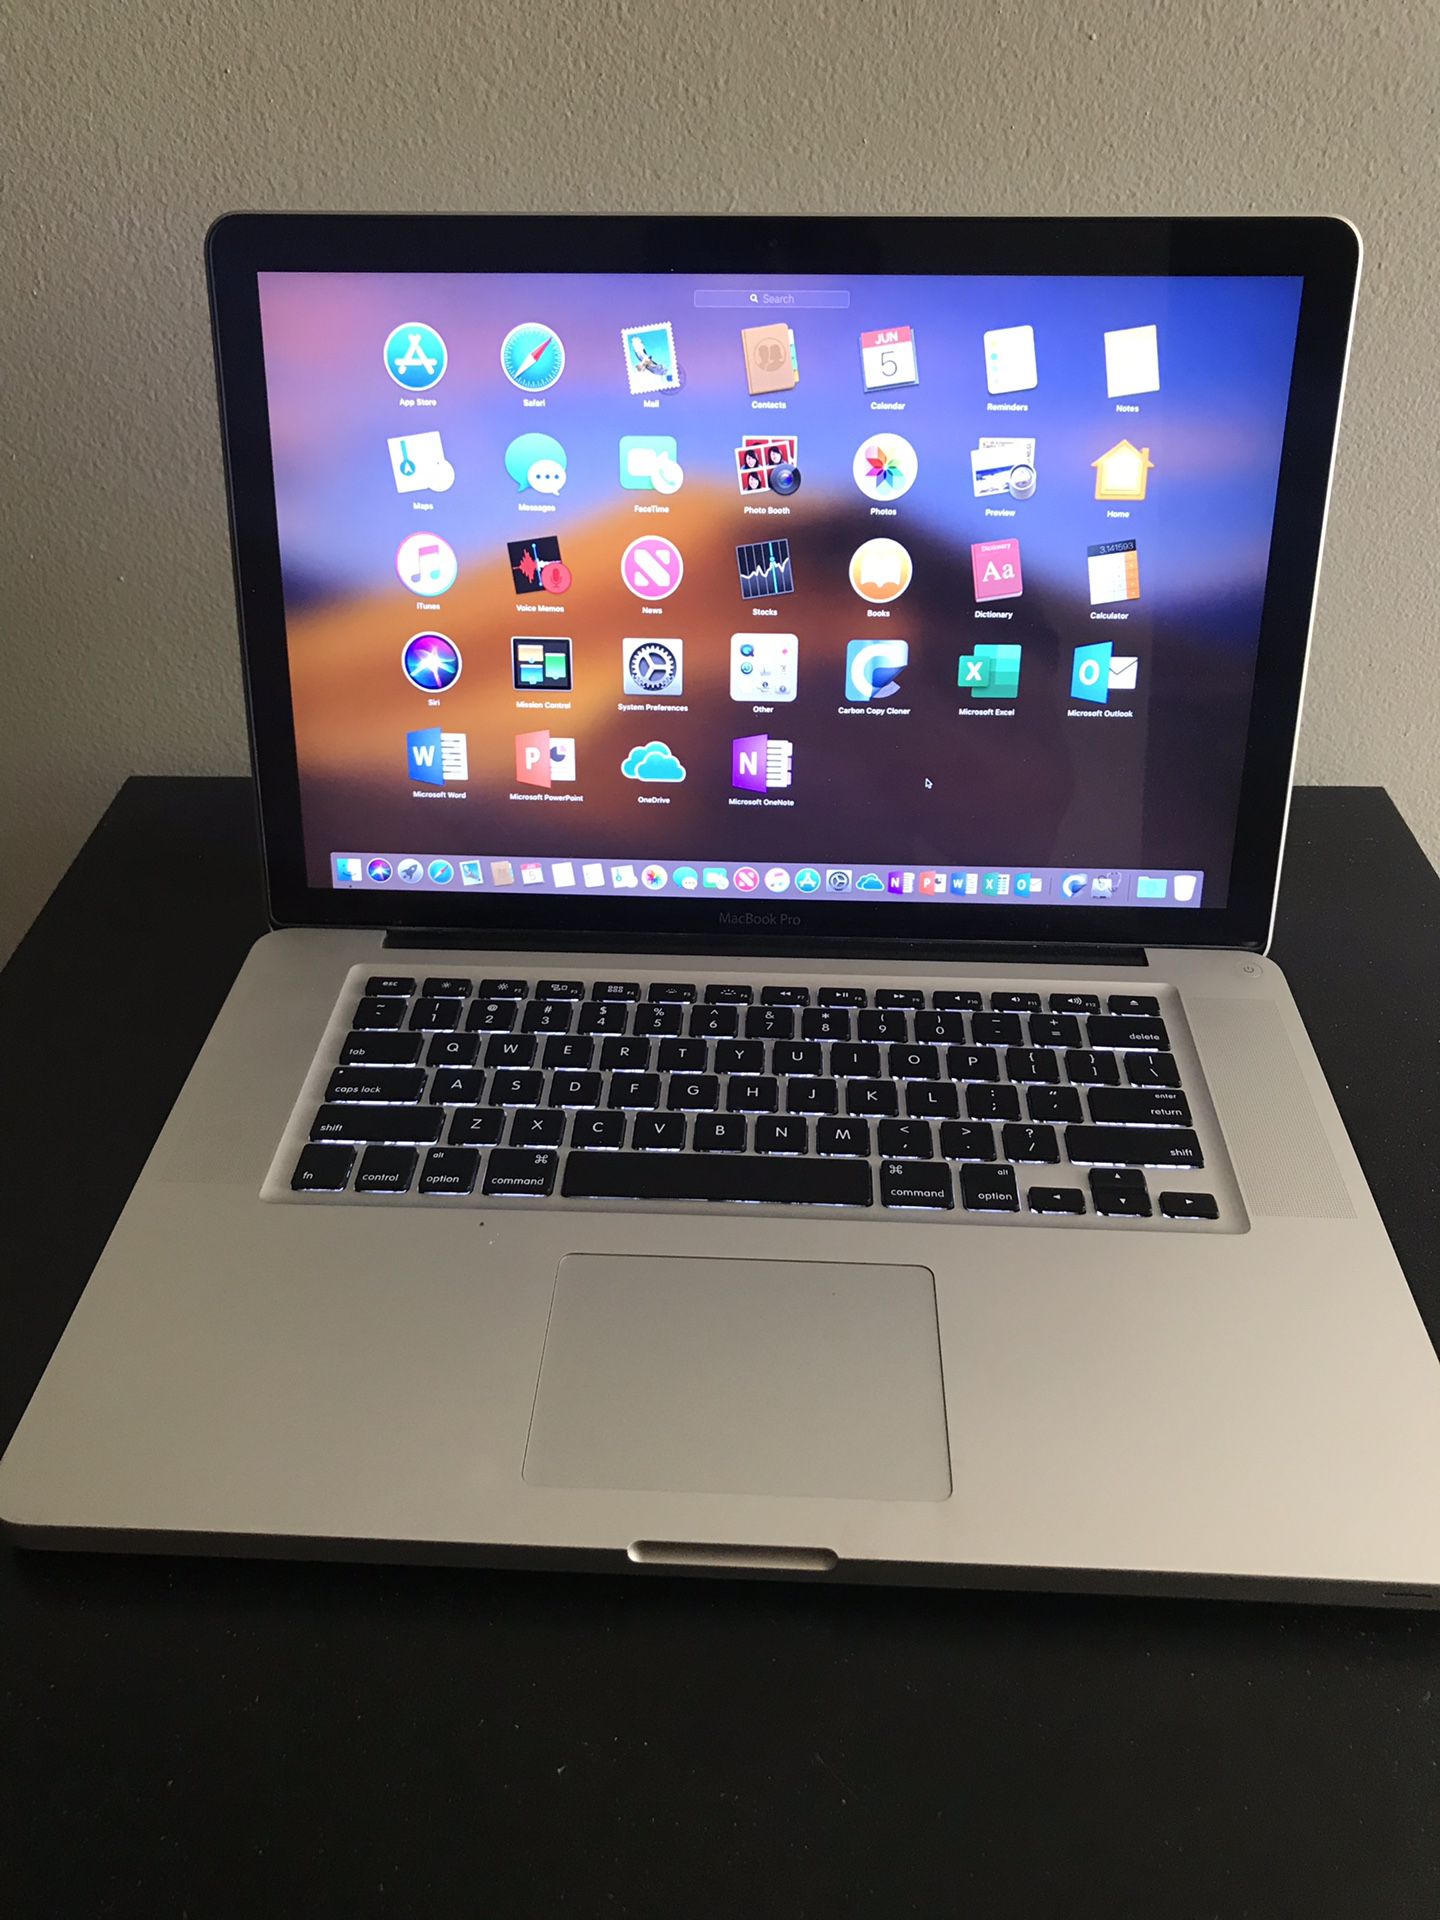 Apple MacBook Pro A1286 15.4" Laptop Intel core i7 8GB 256SSD Samsung fast - MD322LL/A (2011)